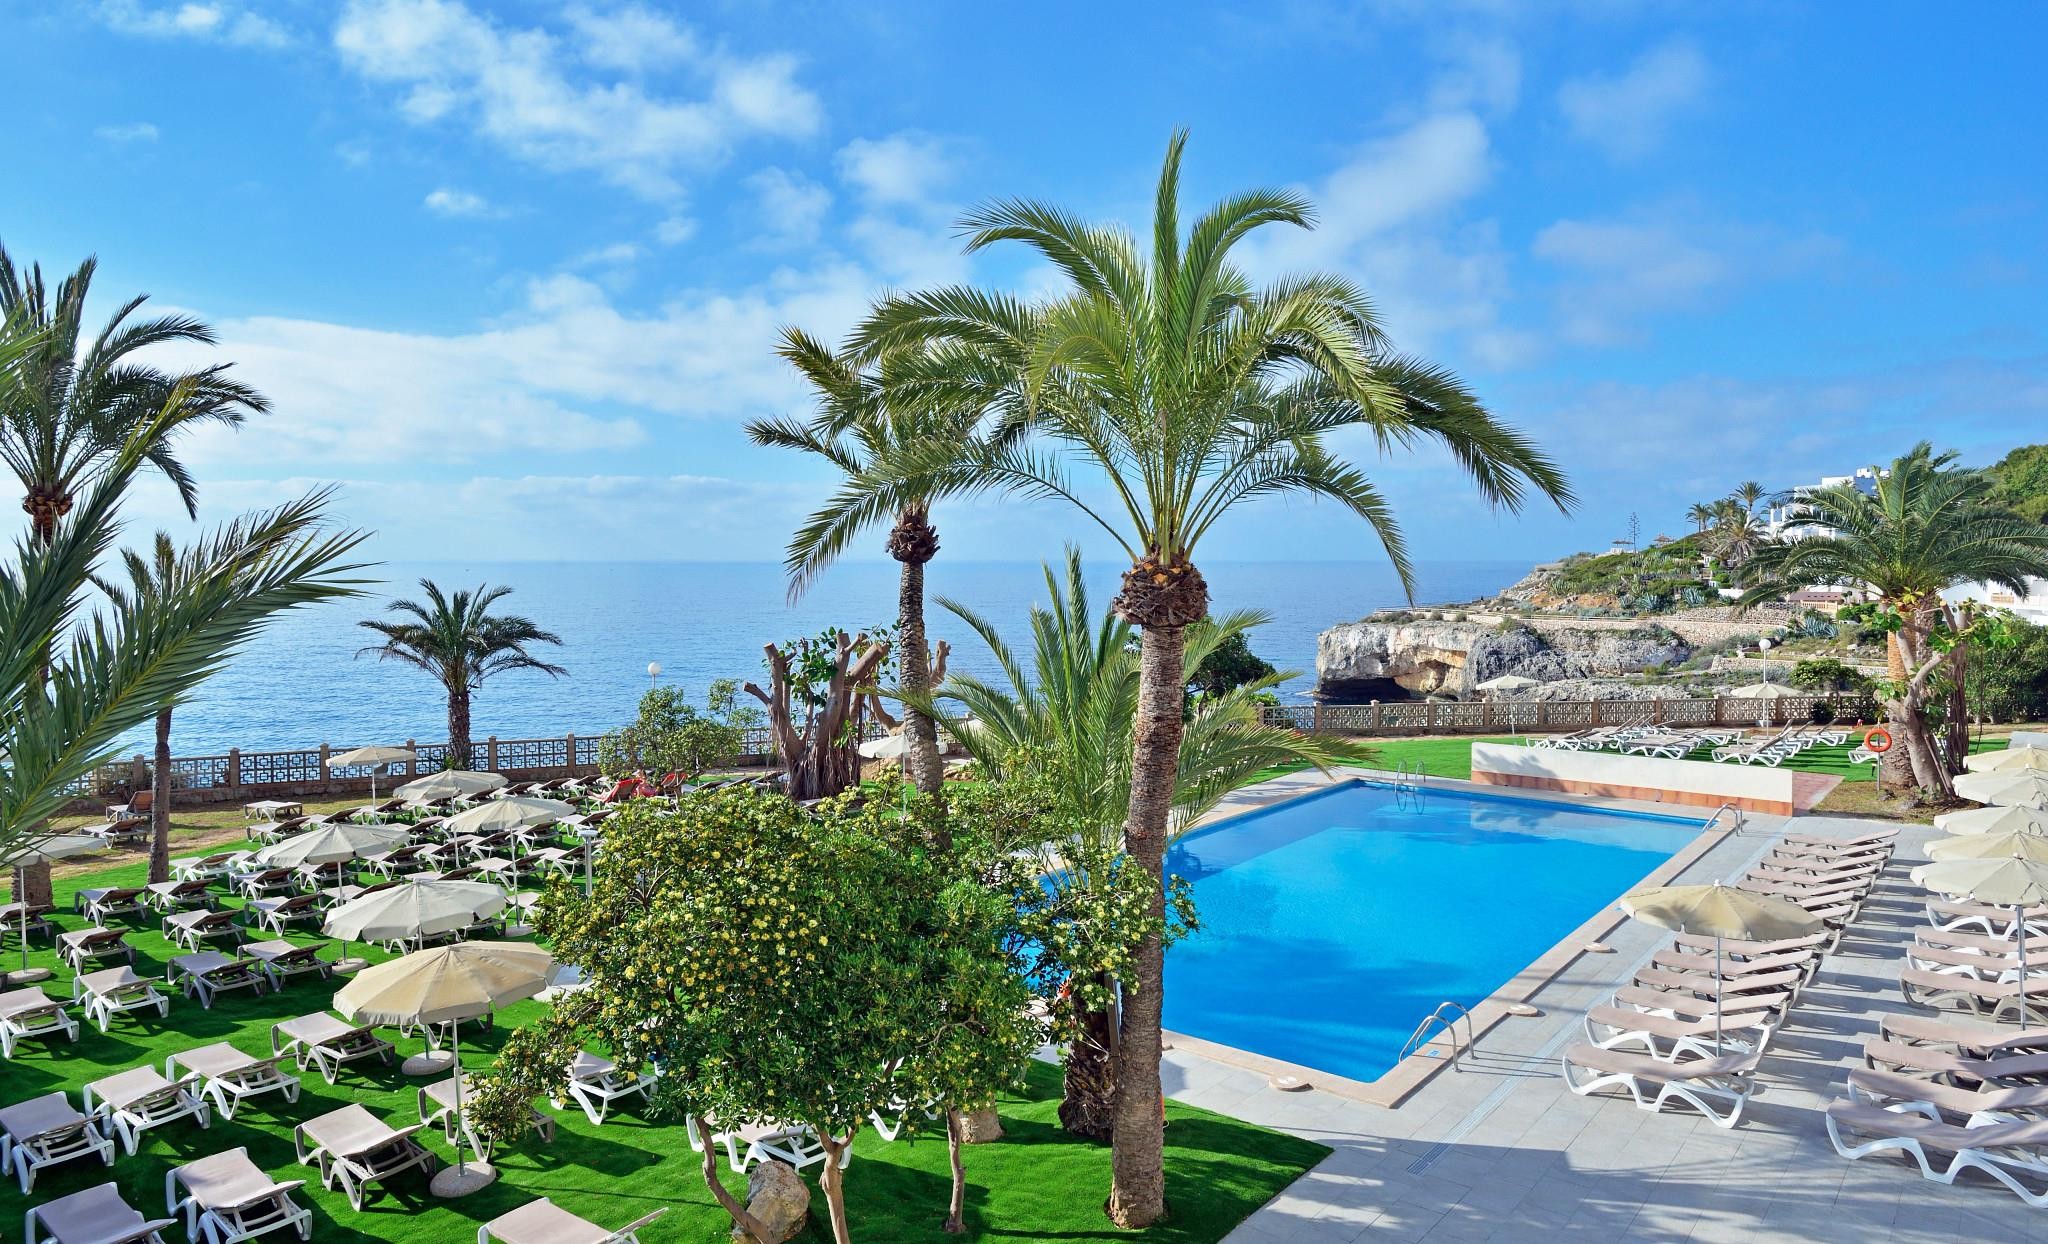 Alua Calas de Mallorca Resort